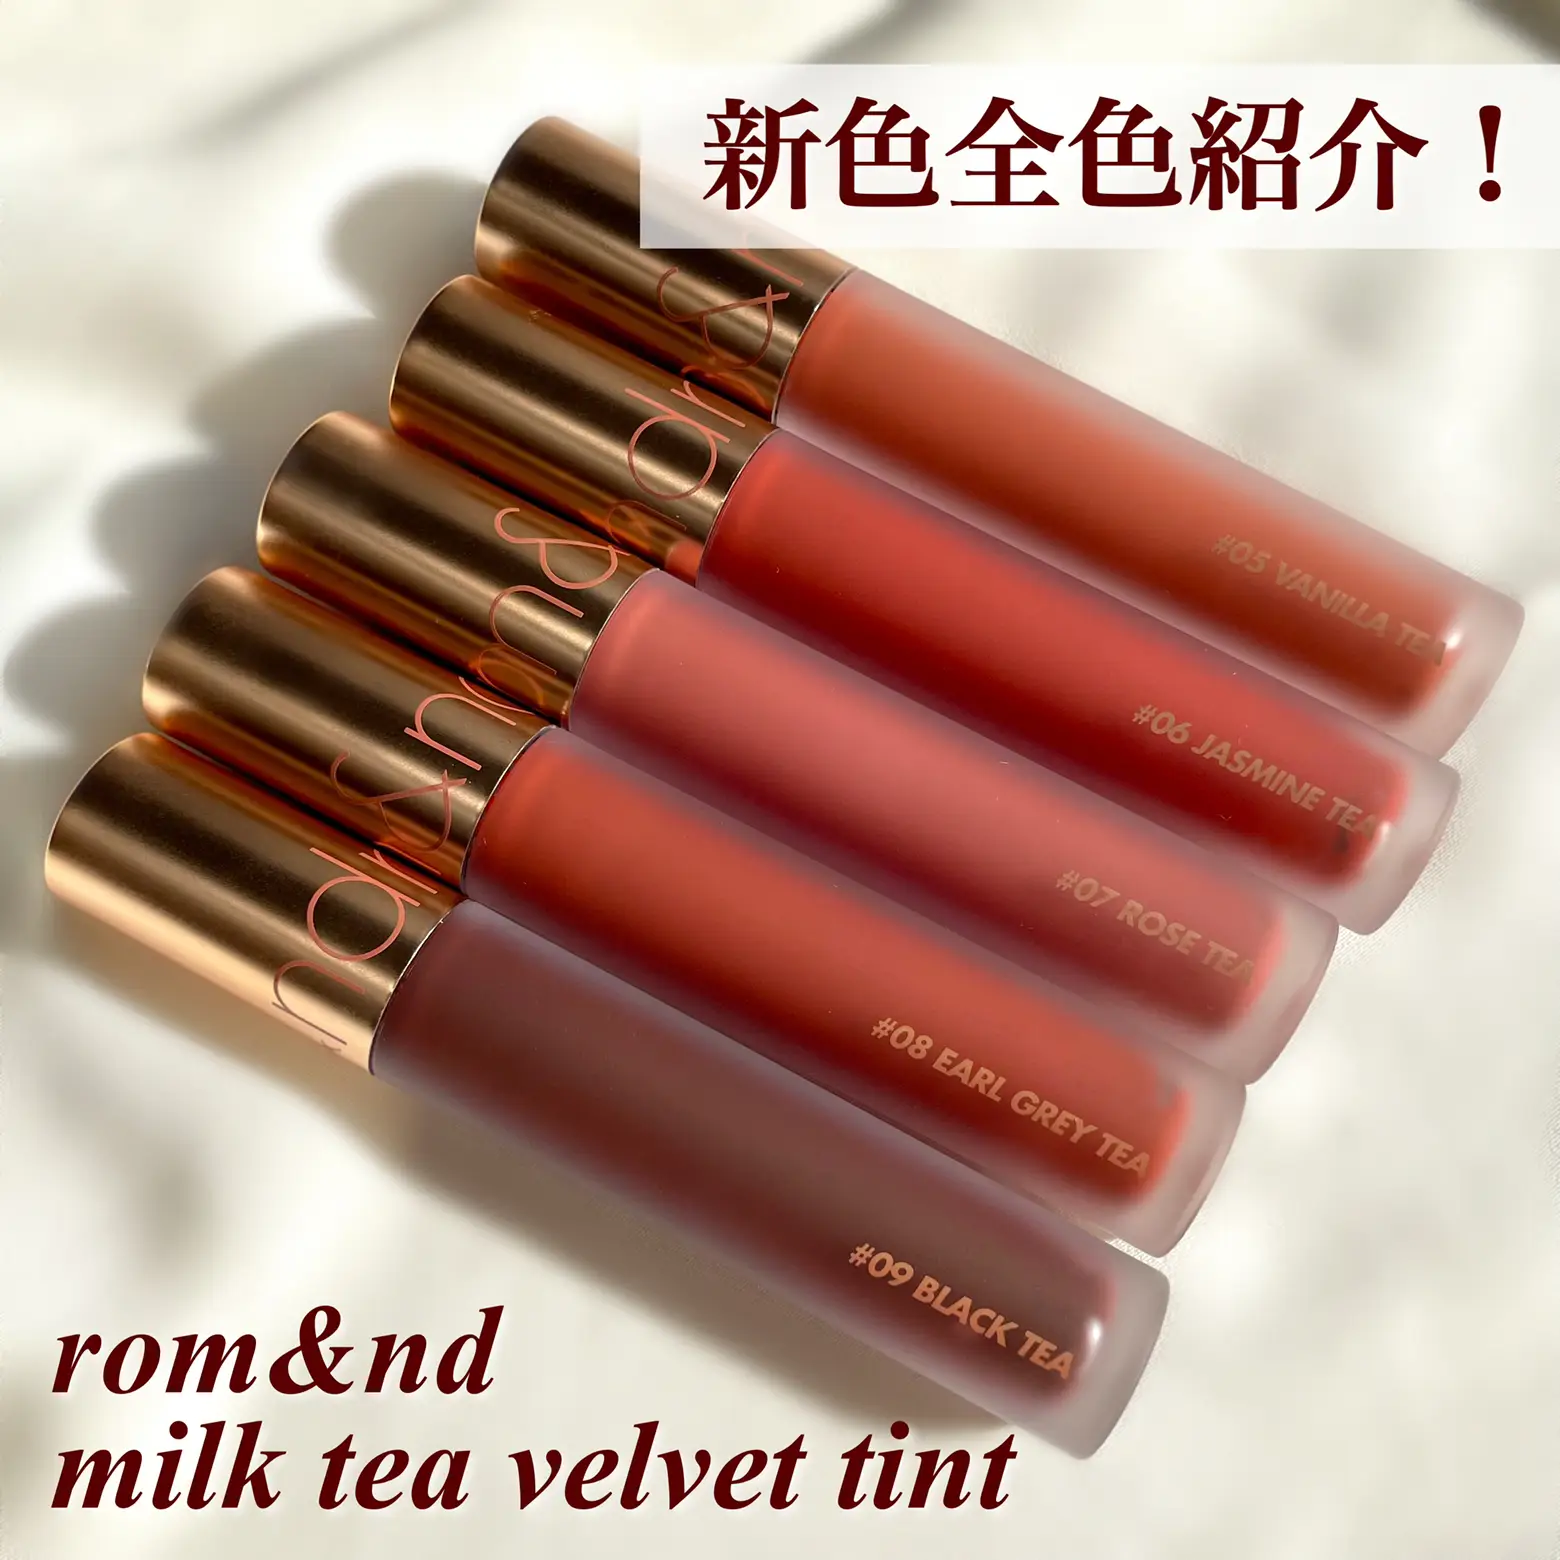 ROM&ND Milk Tea Velvet Tint (4 colors) / New Packaging